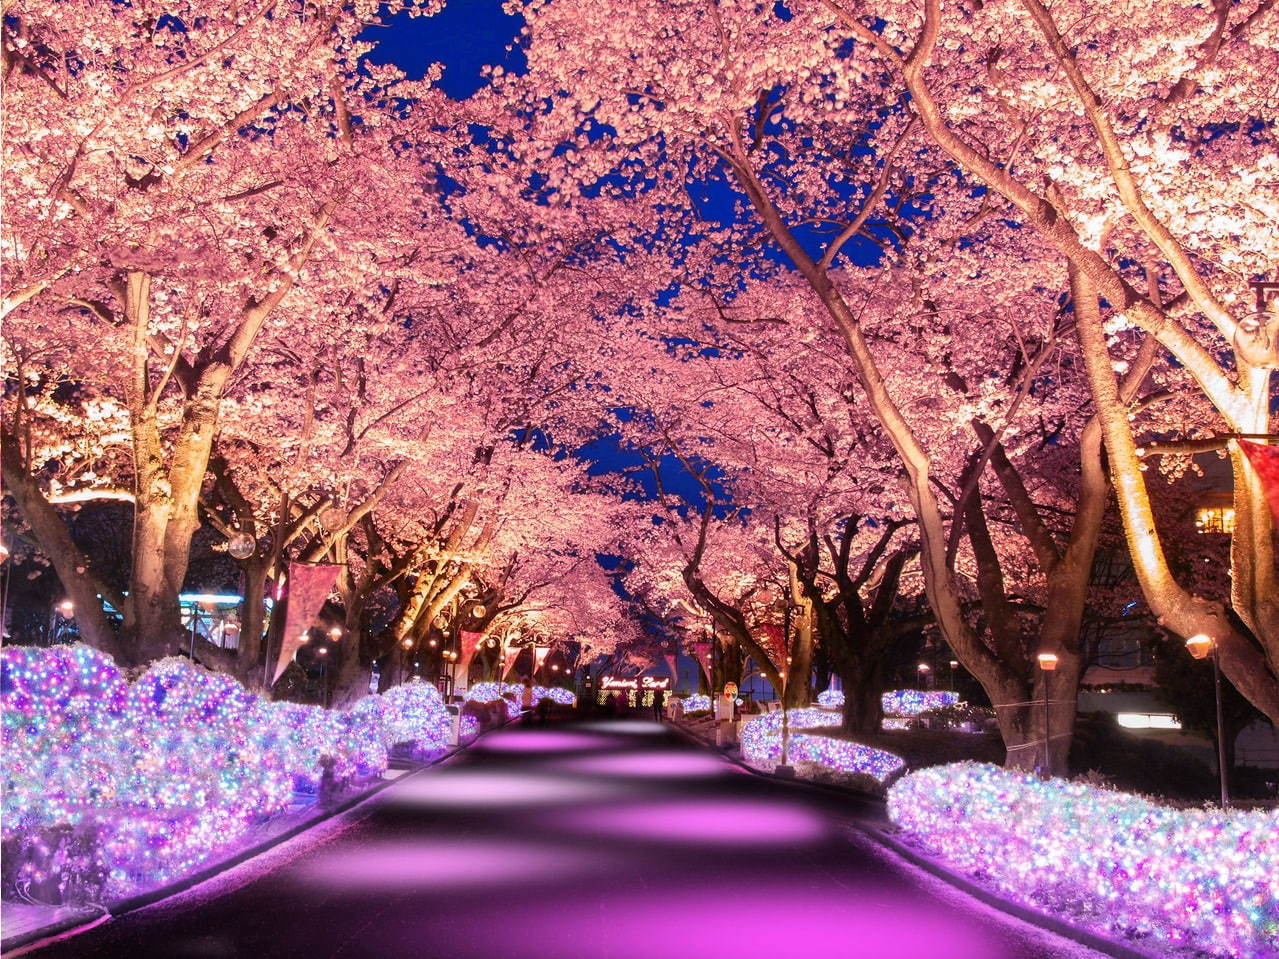 よみうりランド 夜桜ジュエルミネーション 桜並木に宝石色イルミネーション ジェットコースター花見も ファッションプレス